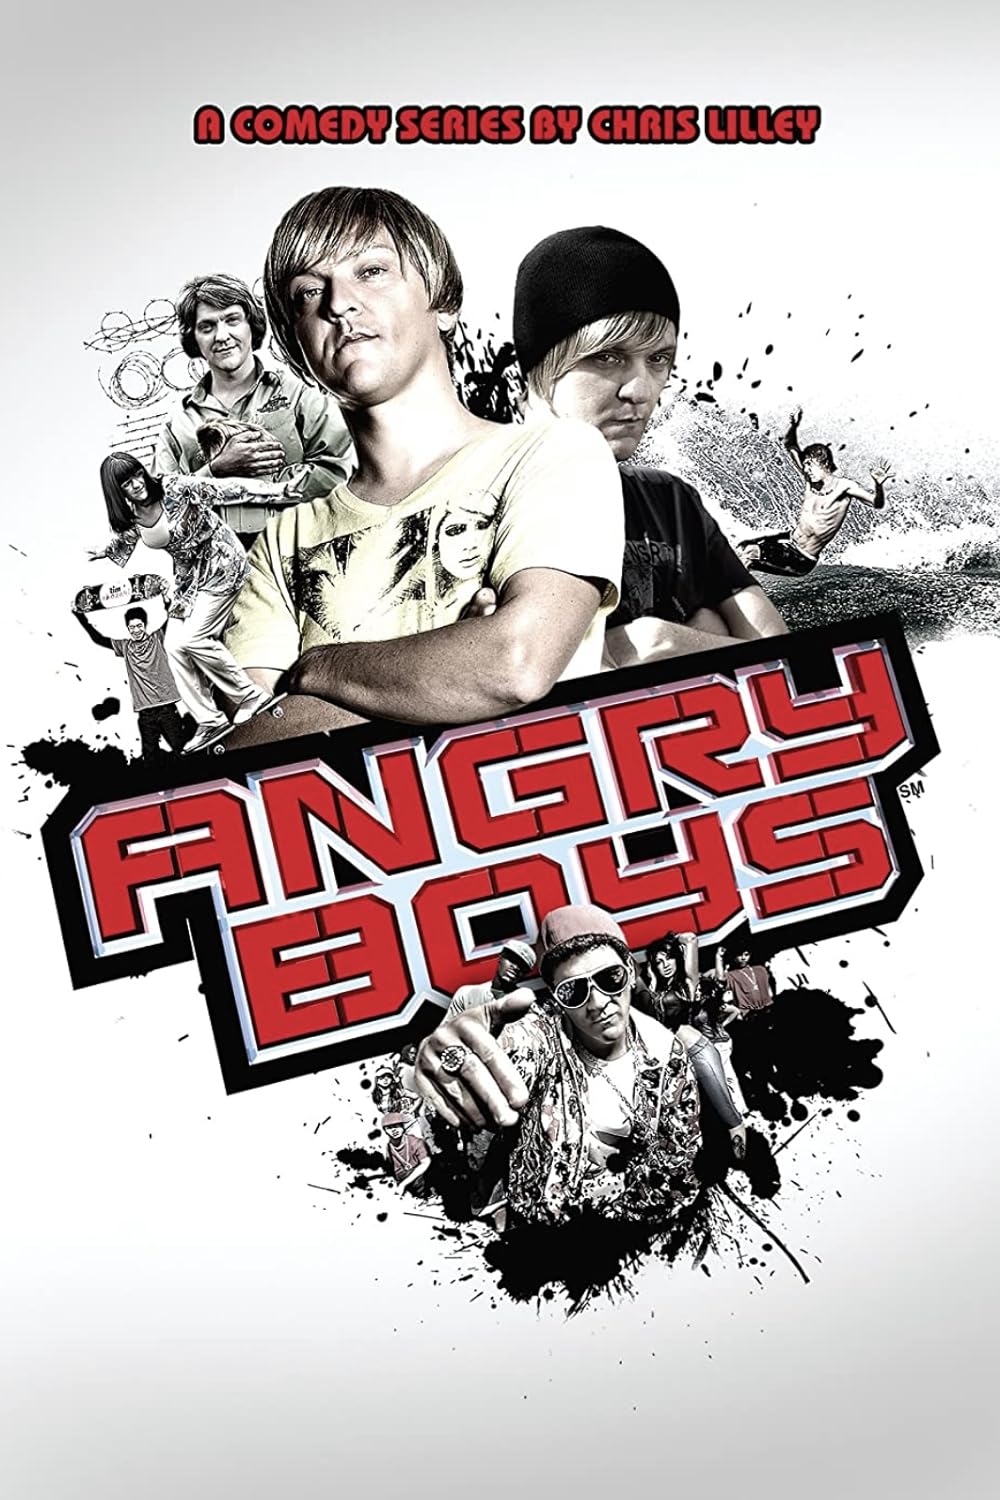 Angry Boys